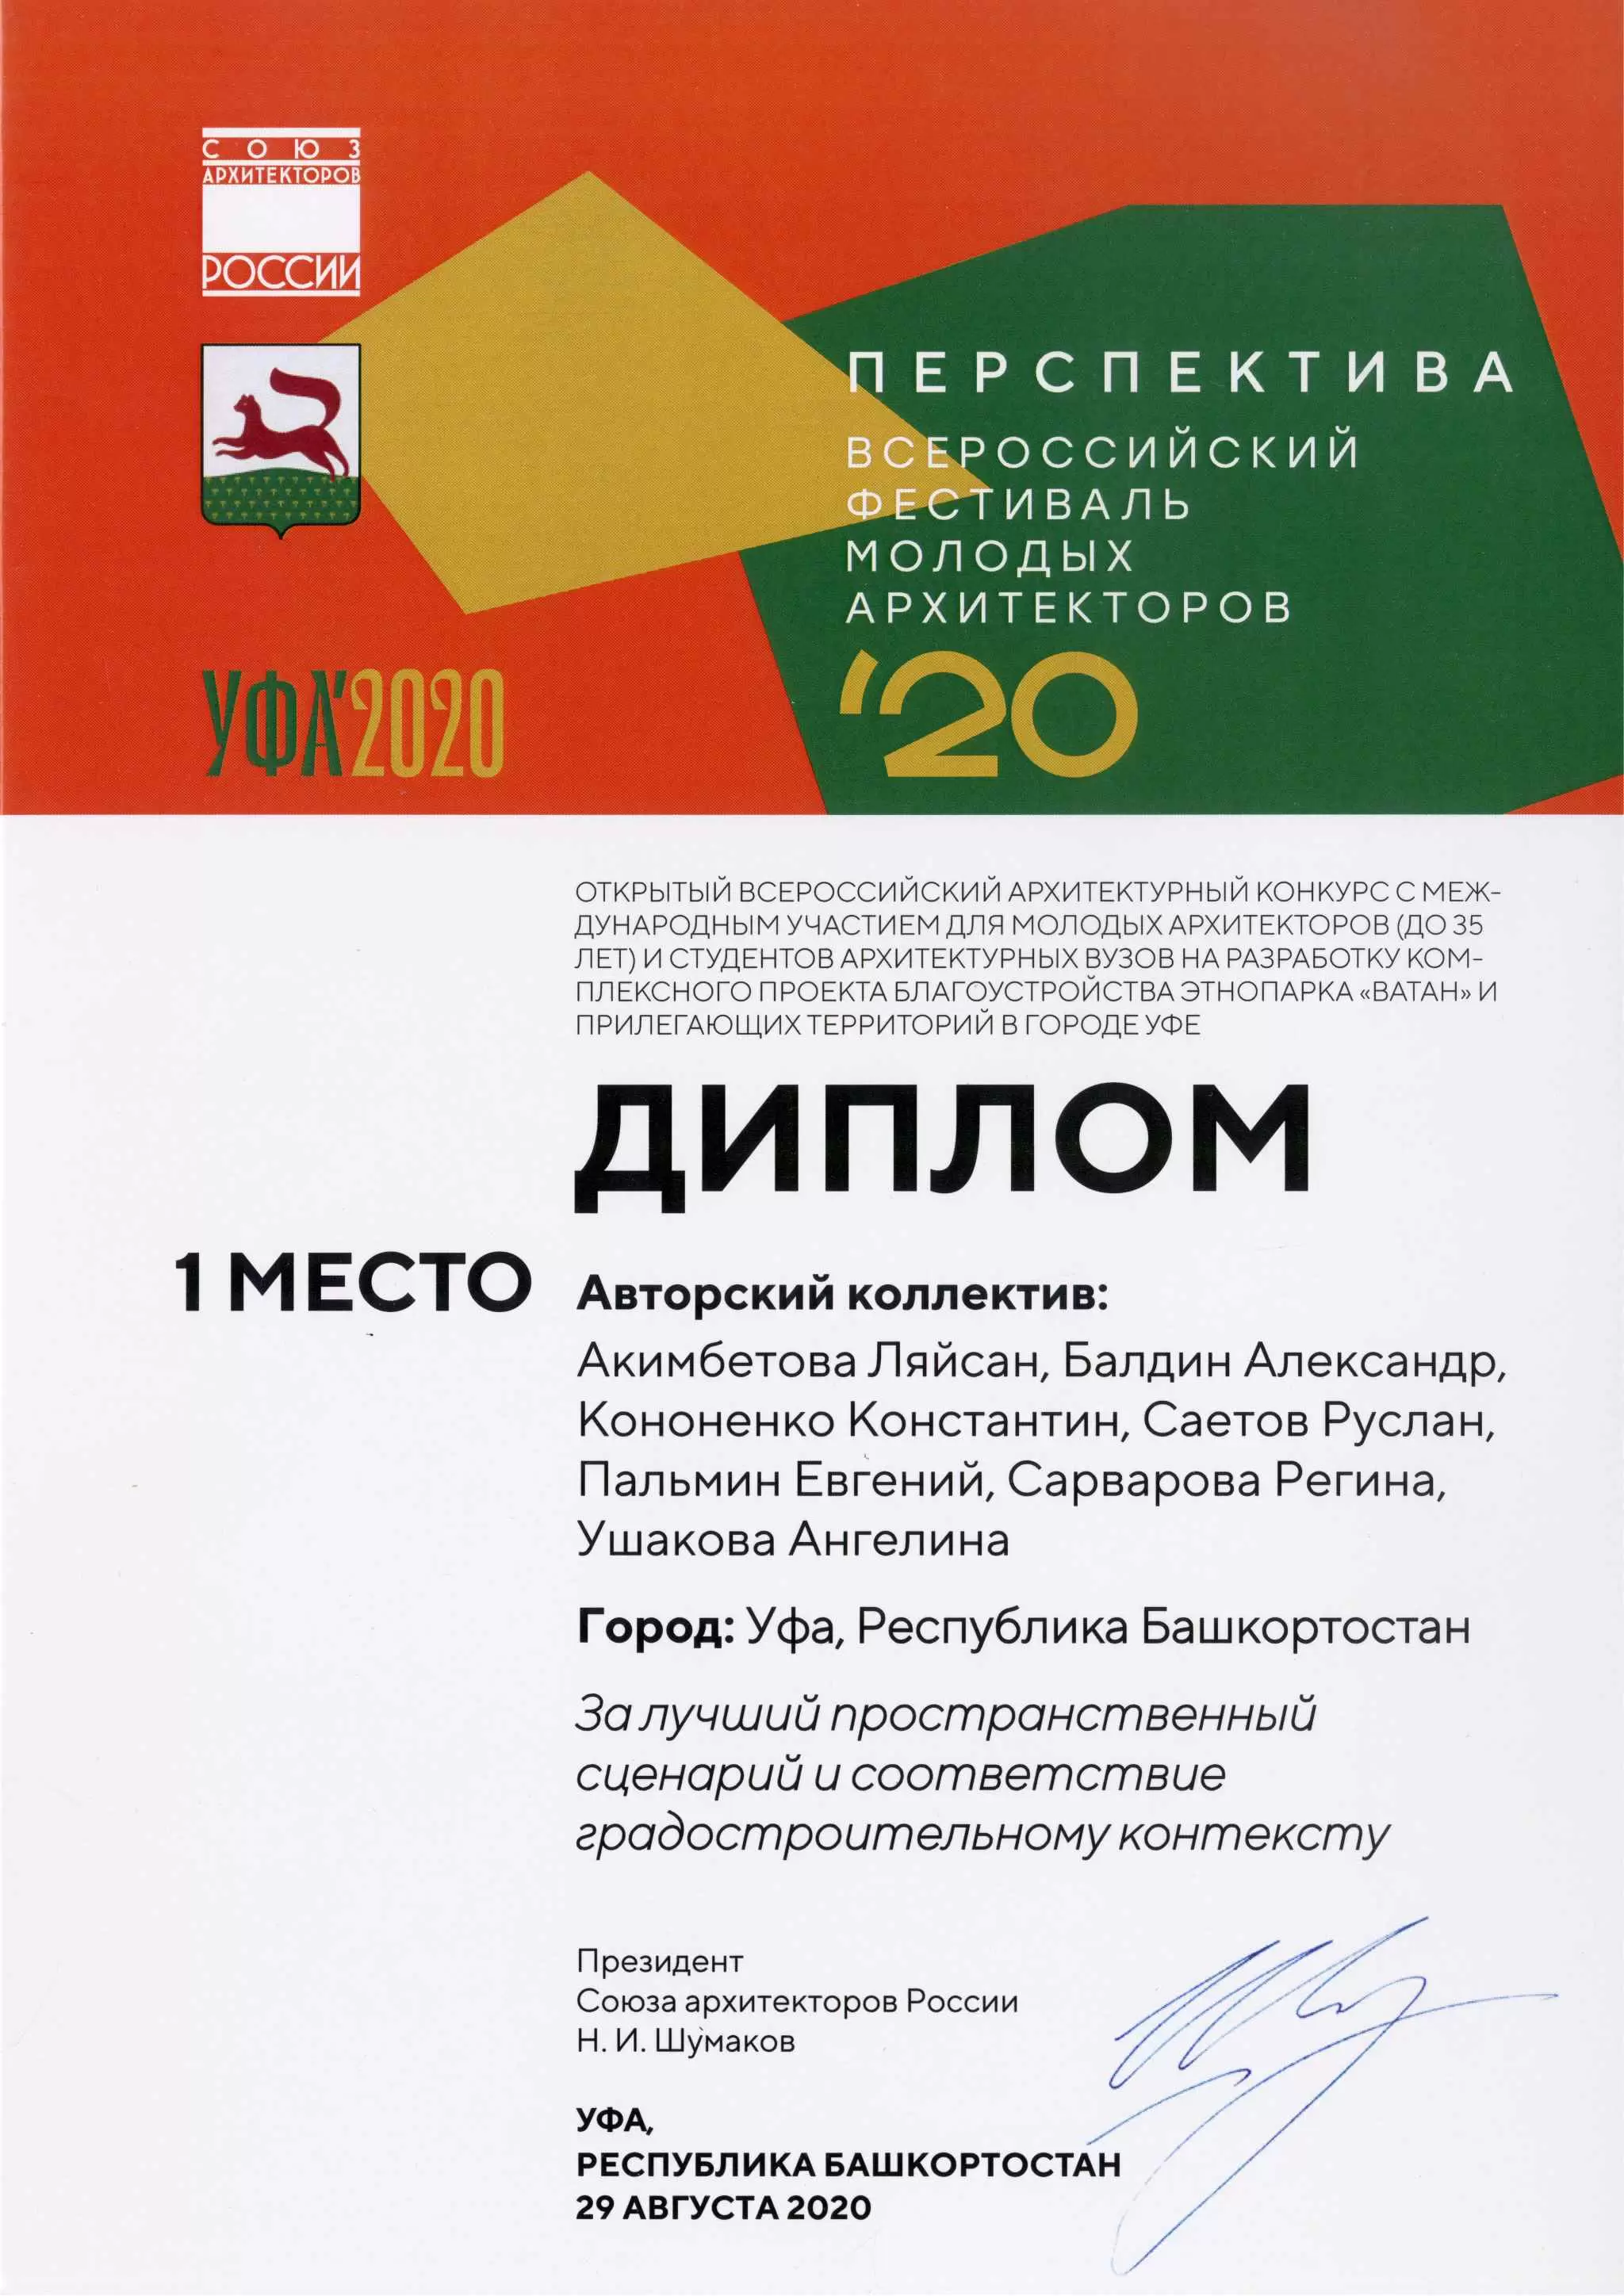 Всероссийский фестиваль молодых архитекторов ПЕРСПЕКТИВА 2020